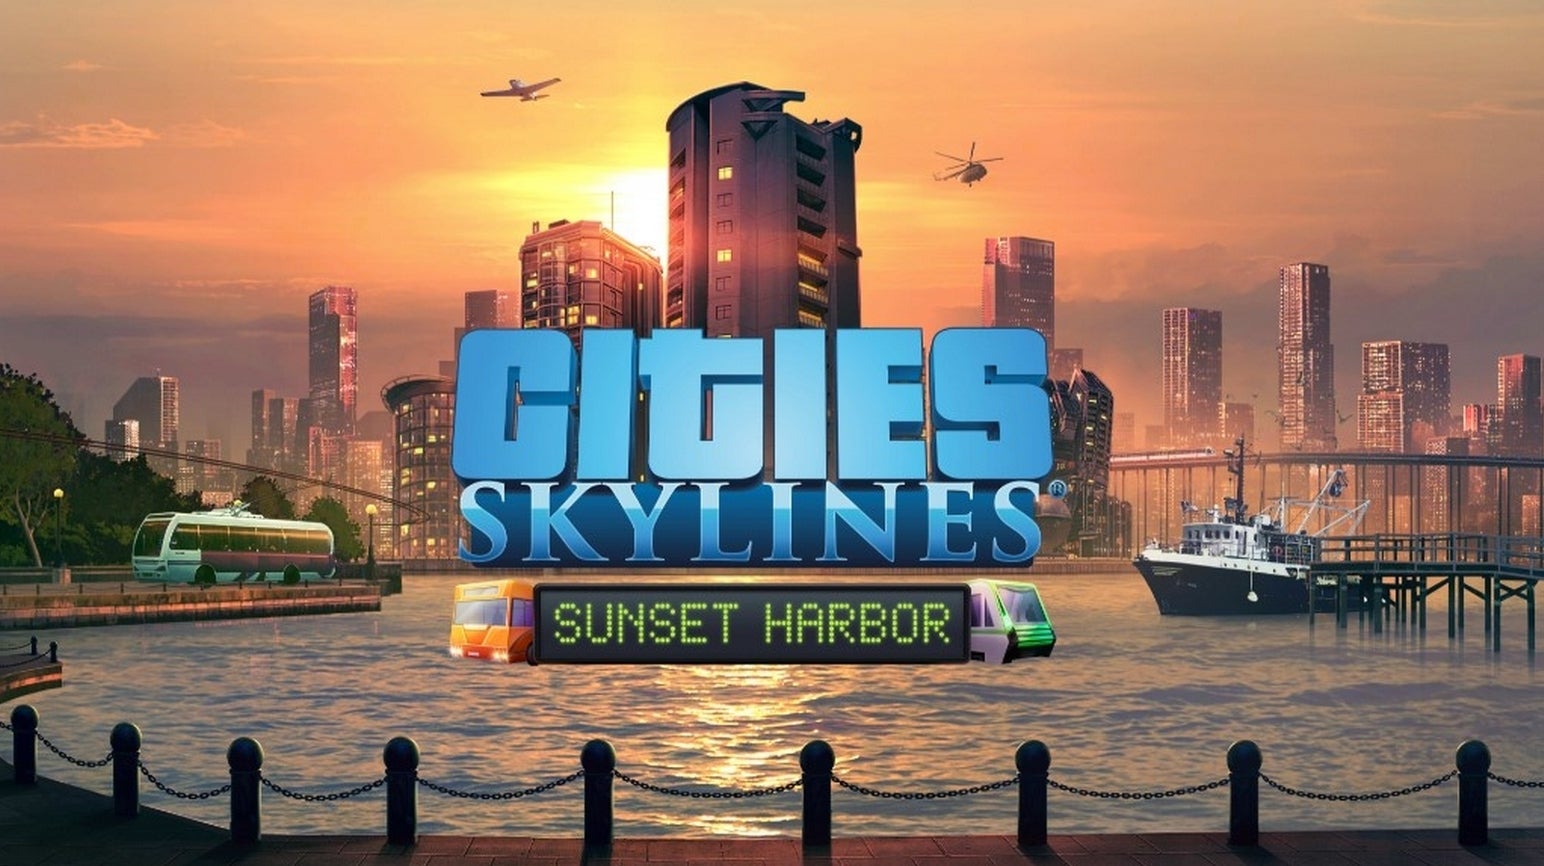 Bilder zu Sunset Harbor für Cities Skylines erscheint nächste Woche